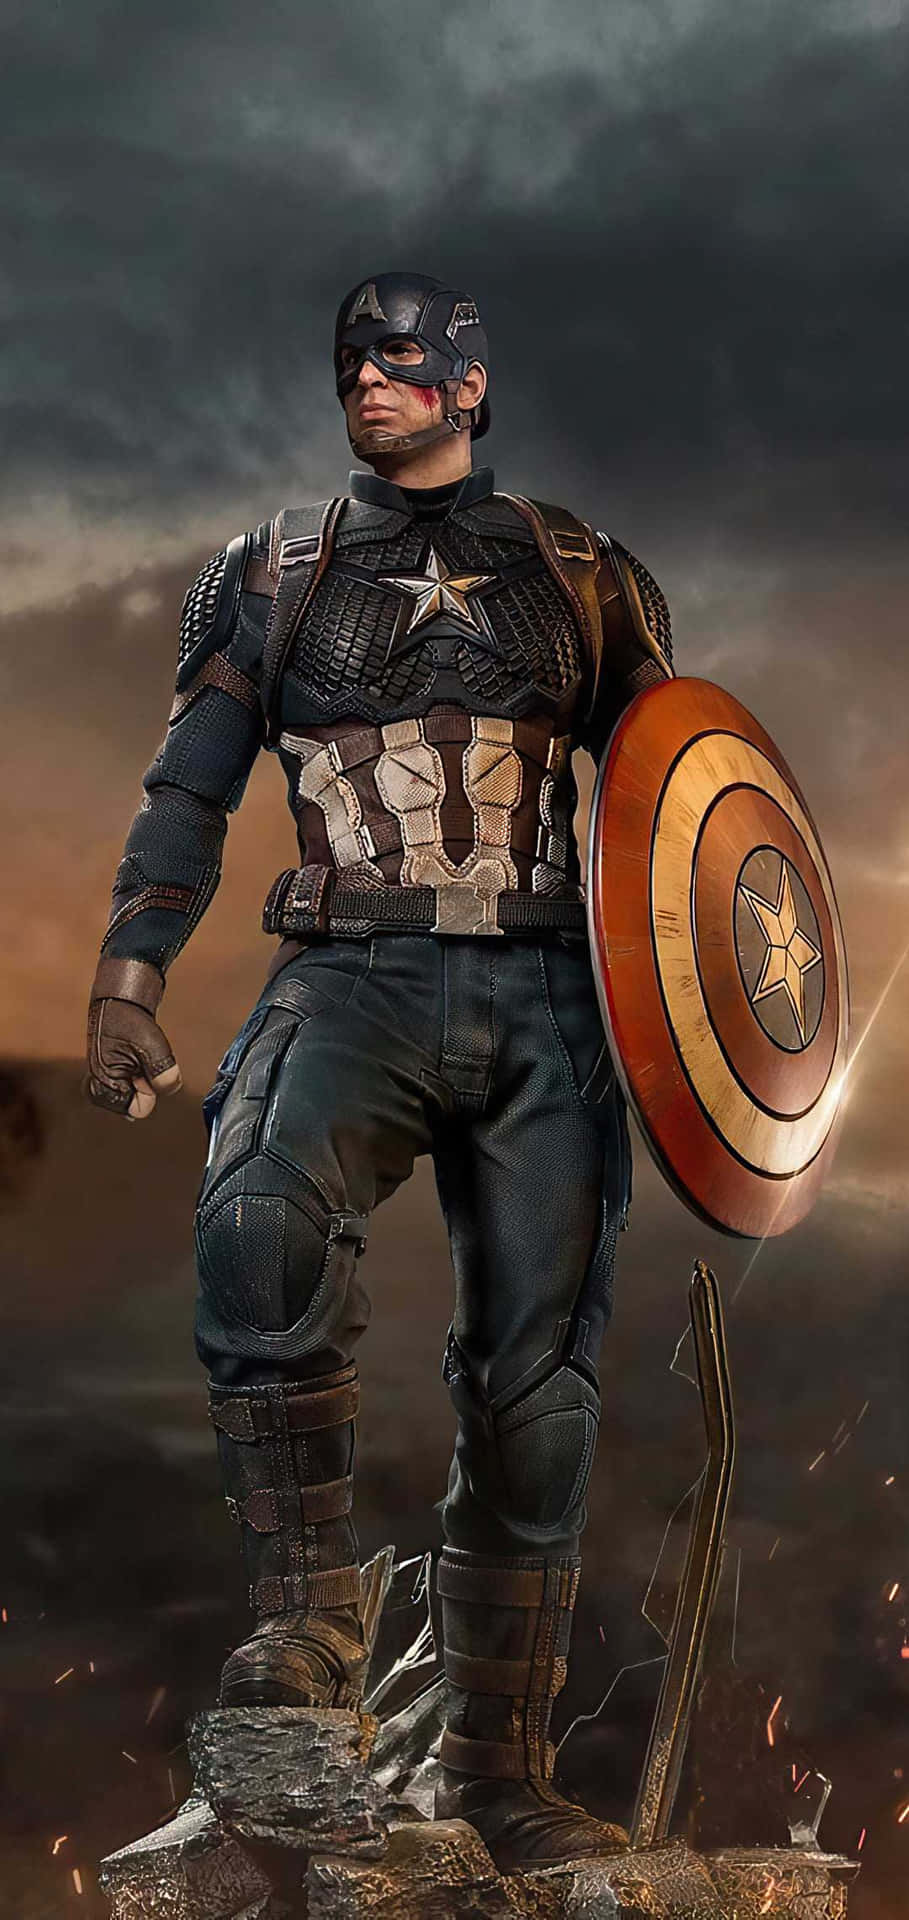 Losusuarios De Android Se Convierten En Superhéroes Con La Llegada De Captain America.